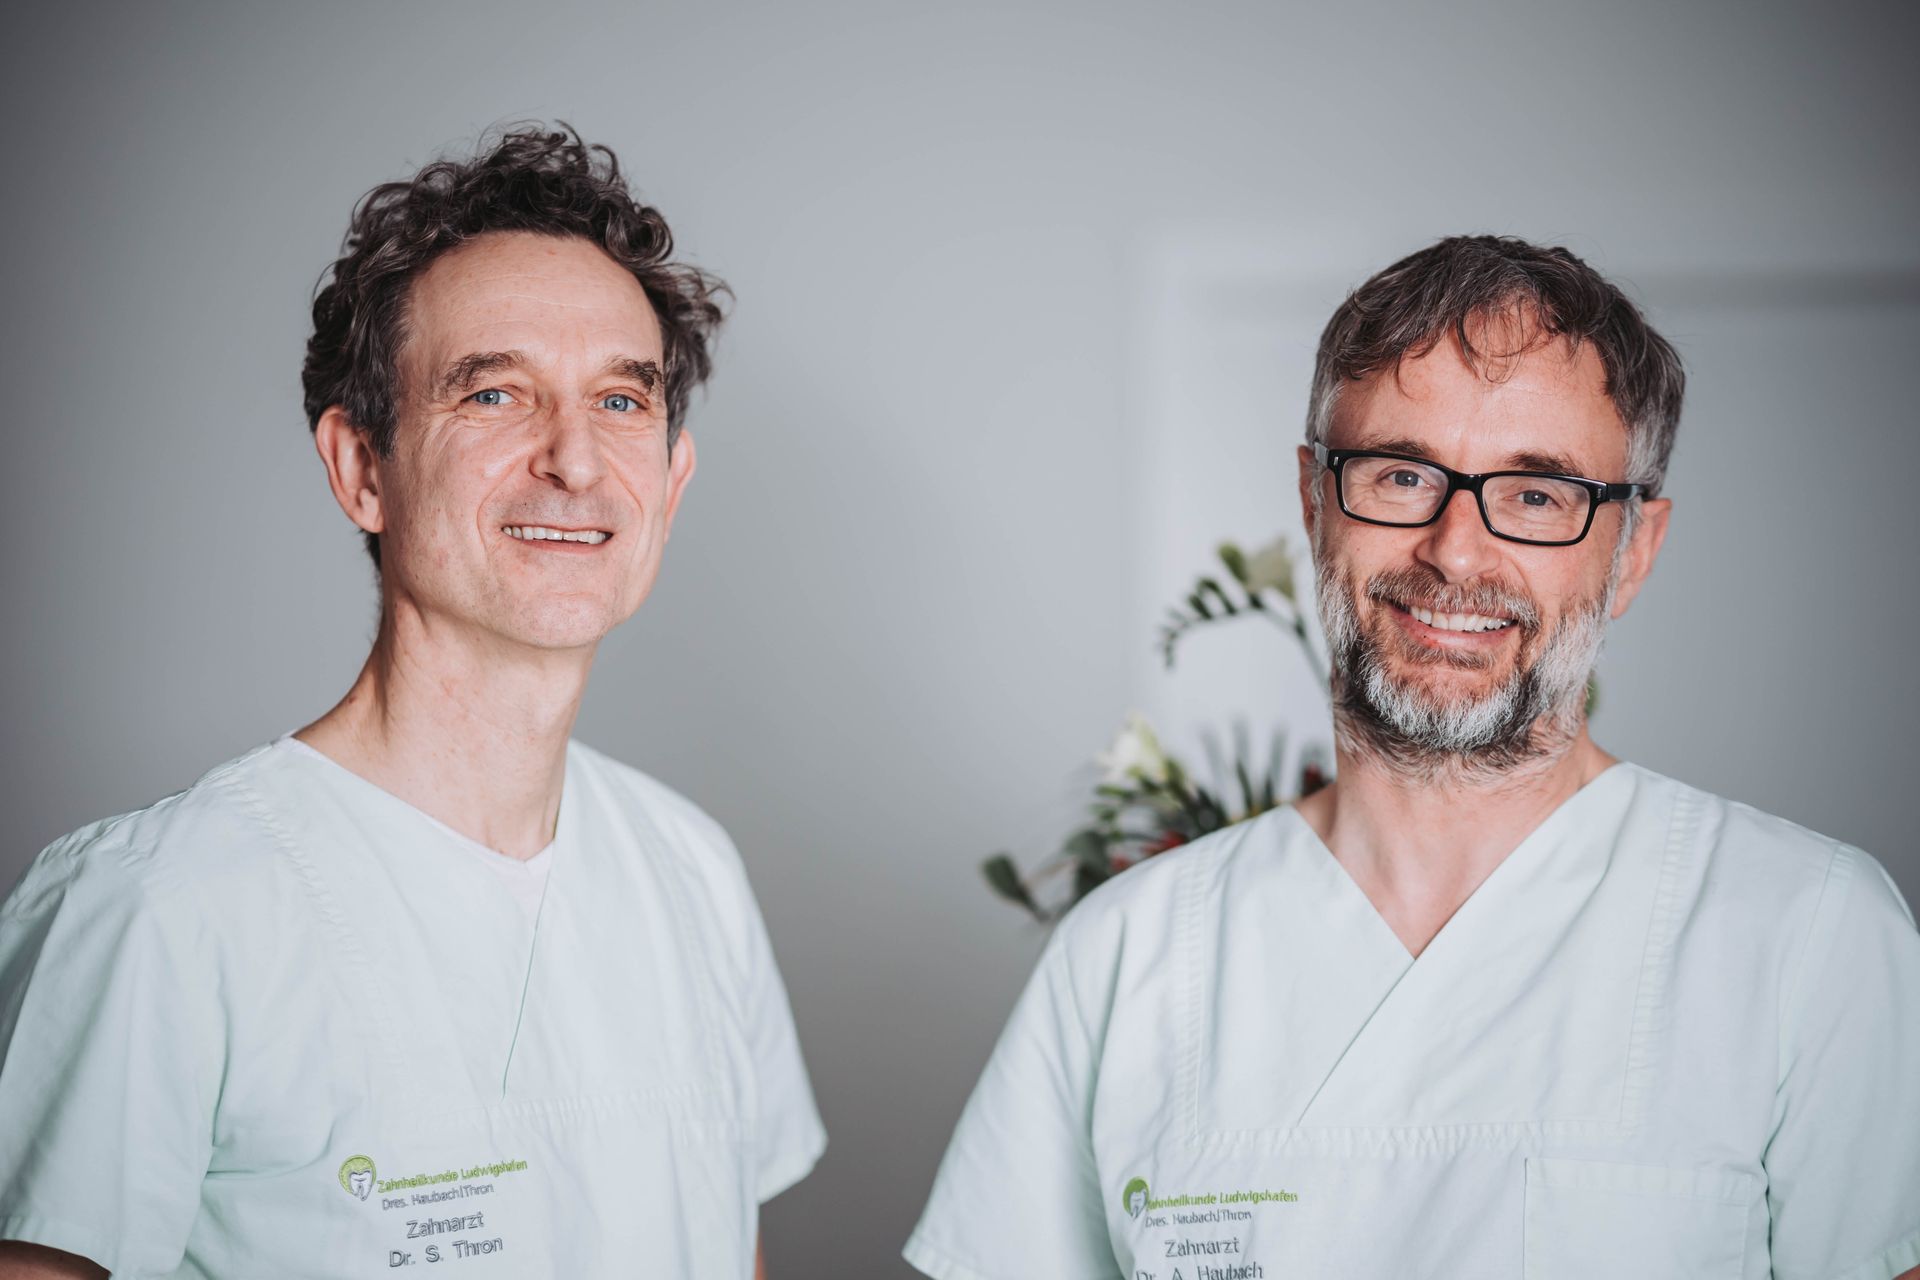 Zahnärzte Ludwigshafen-Oppau, Dr. Arnd Haubach und Dr. Stefan Thron